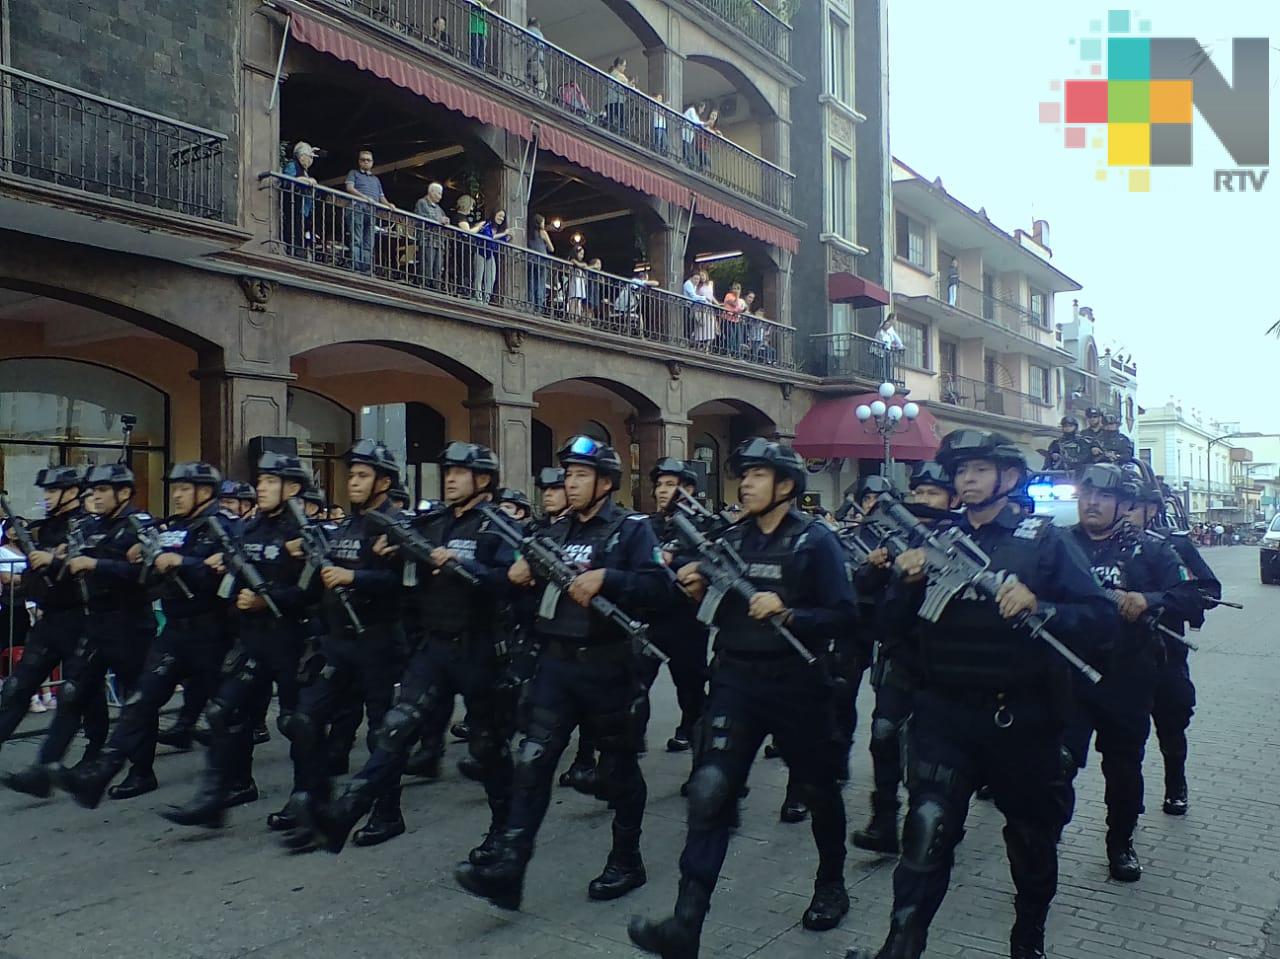 Vistosidad y alegría en desfile conmemorativo de la batalla del 21 de mayo, en Córdoba